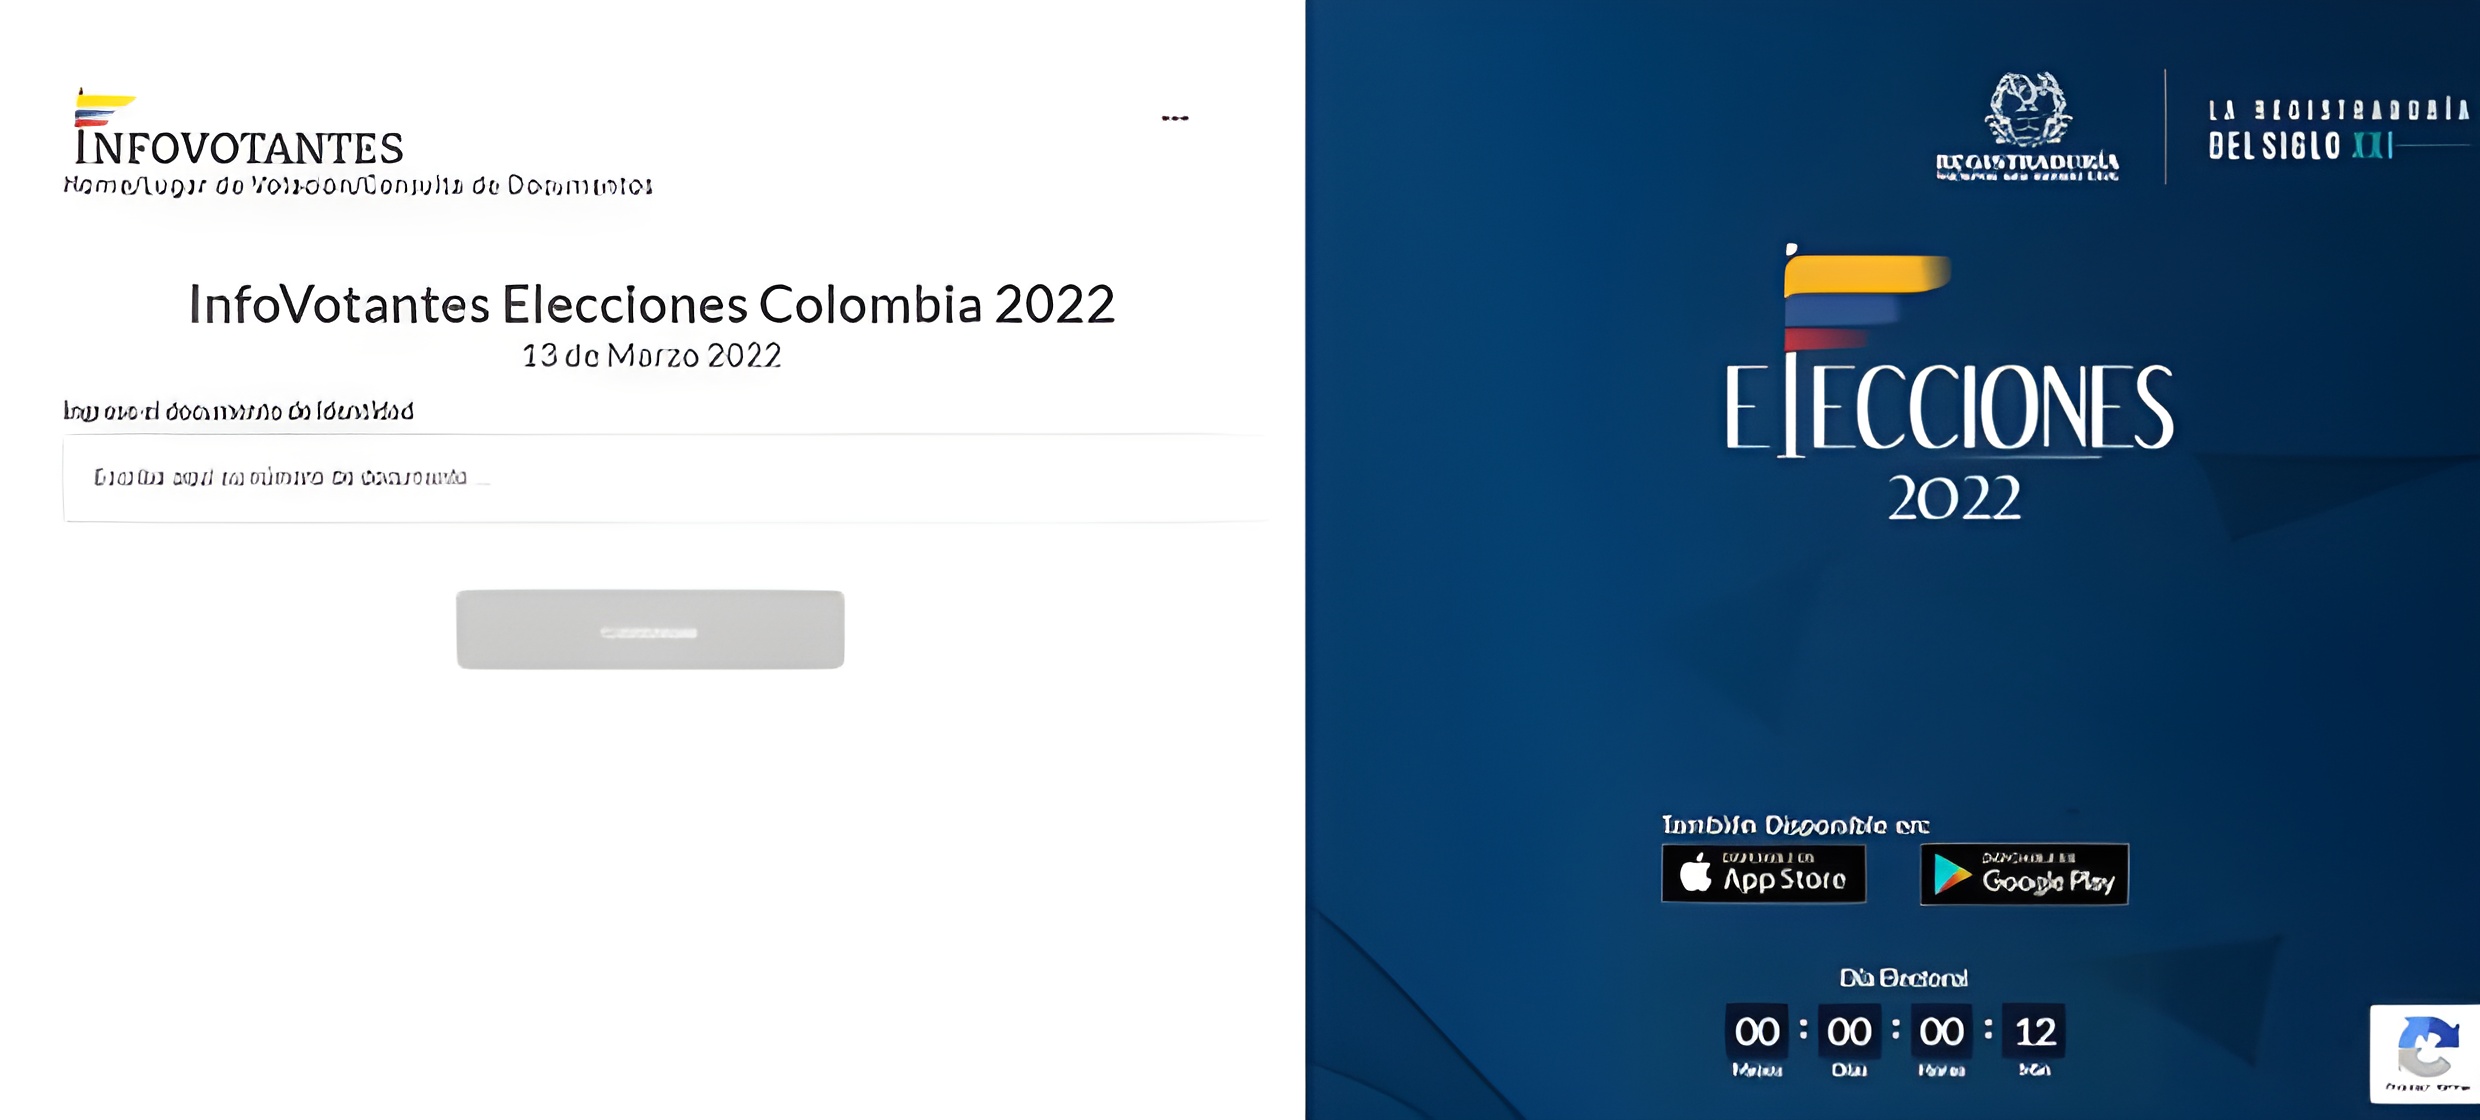 Consulta puest votación Elecciones Colombia 2022